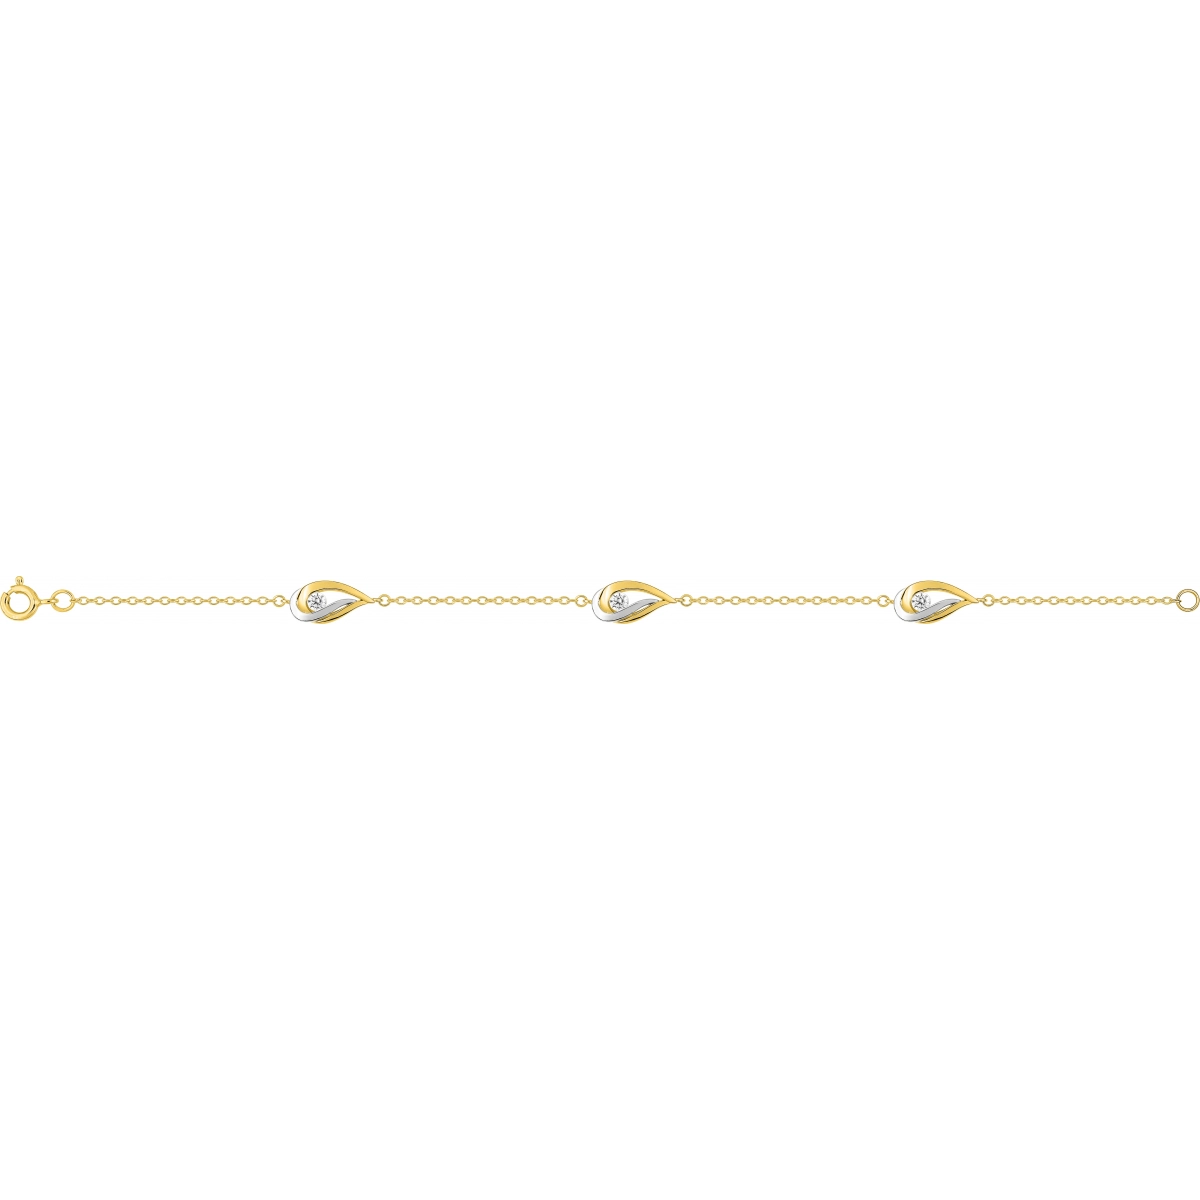 Pulseira 18cm com Zircônia cúbica banhado a ouro bicolor BSBL43Z18 Lua blanca BSBL43Z18.0